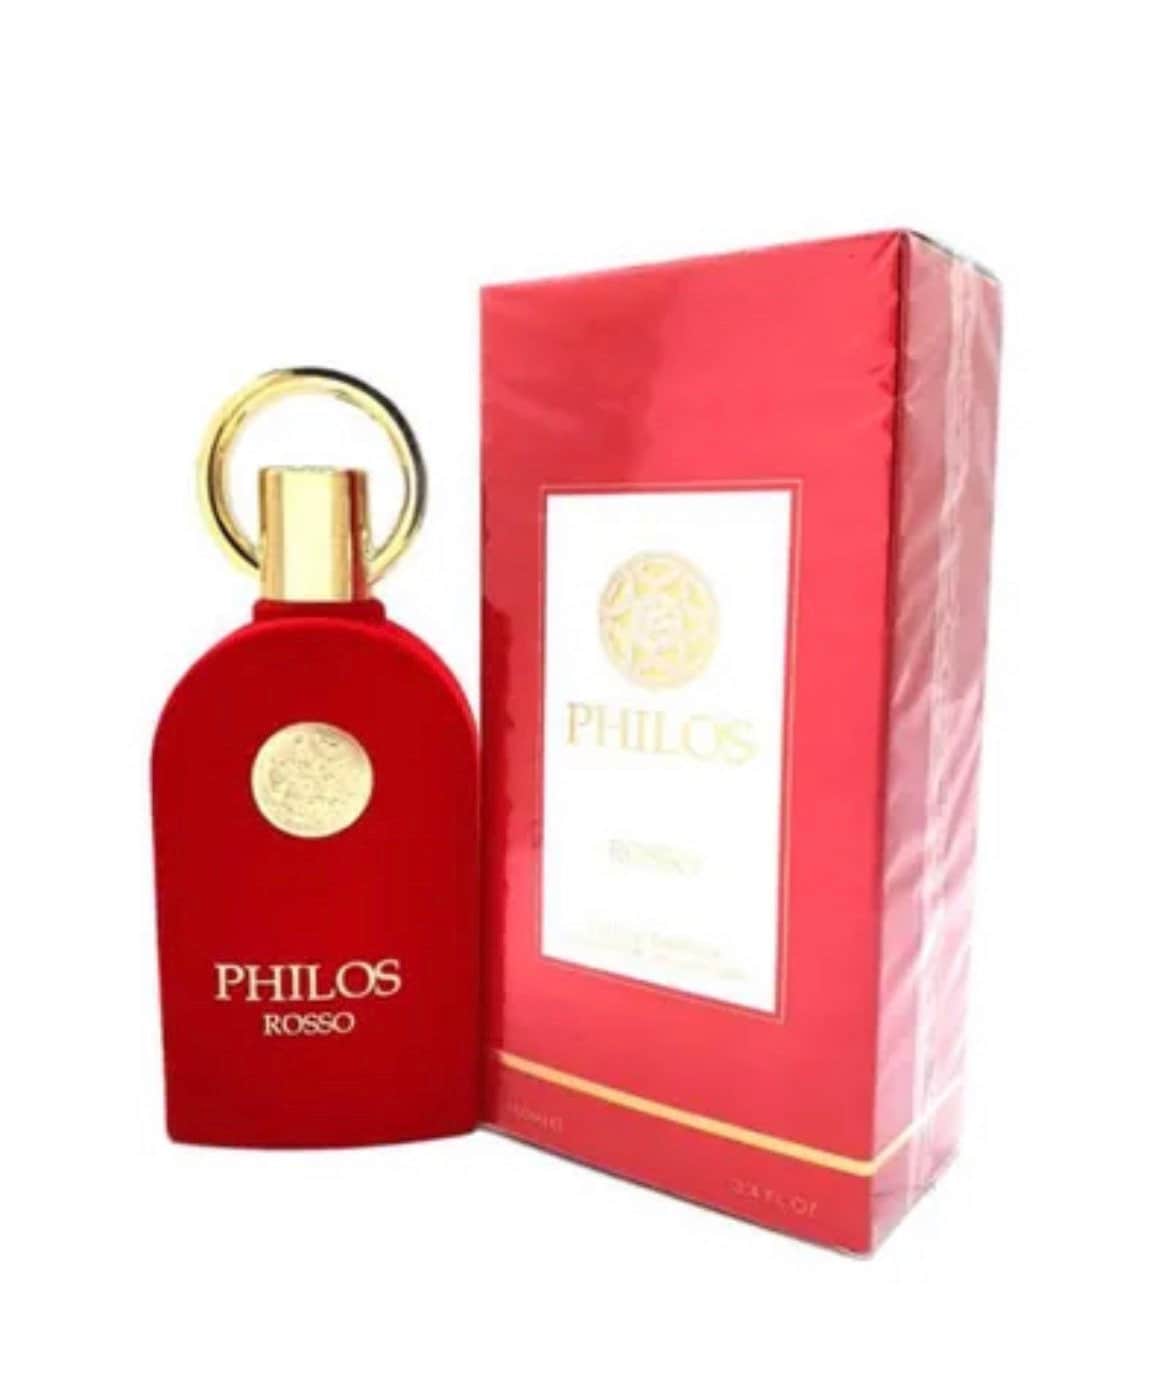 Philos Rosso parfum